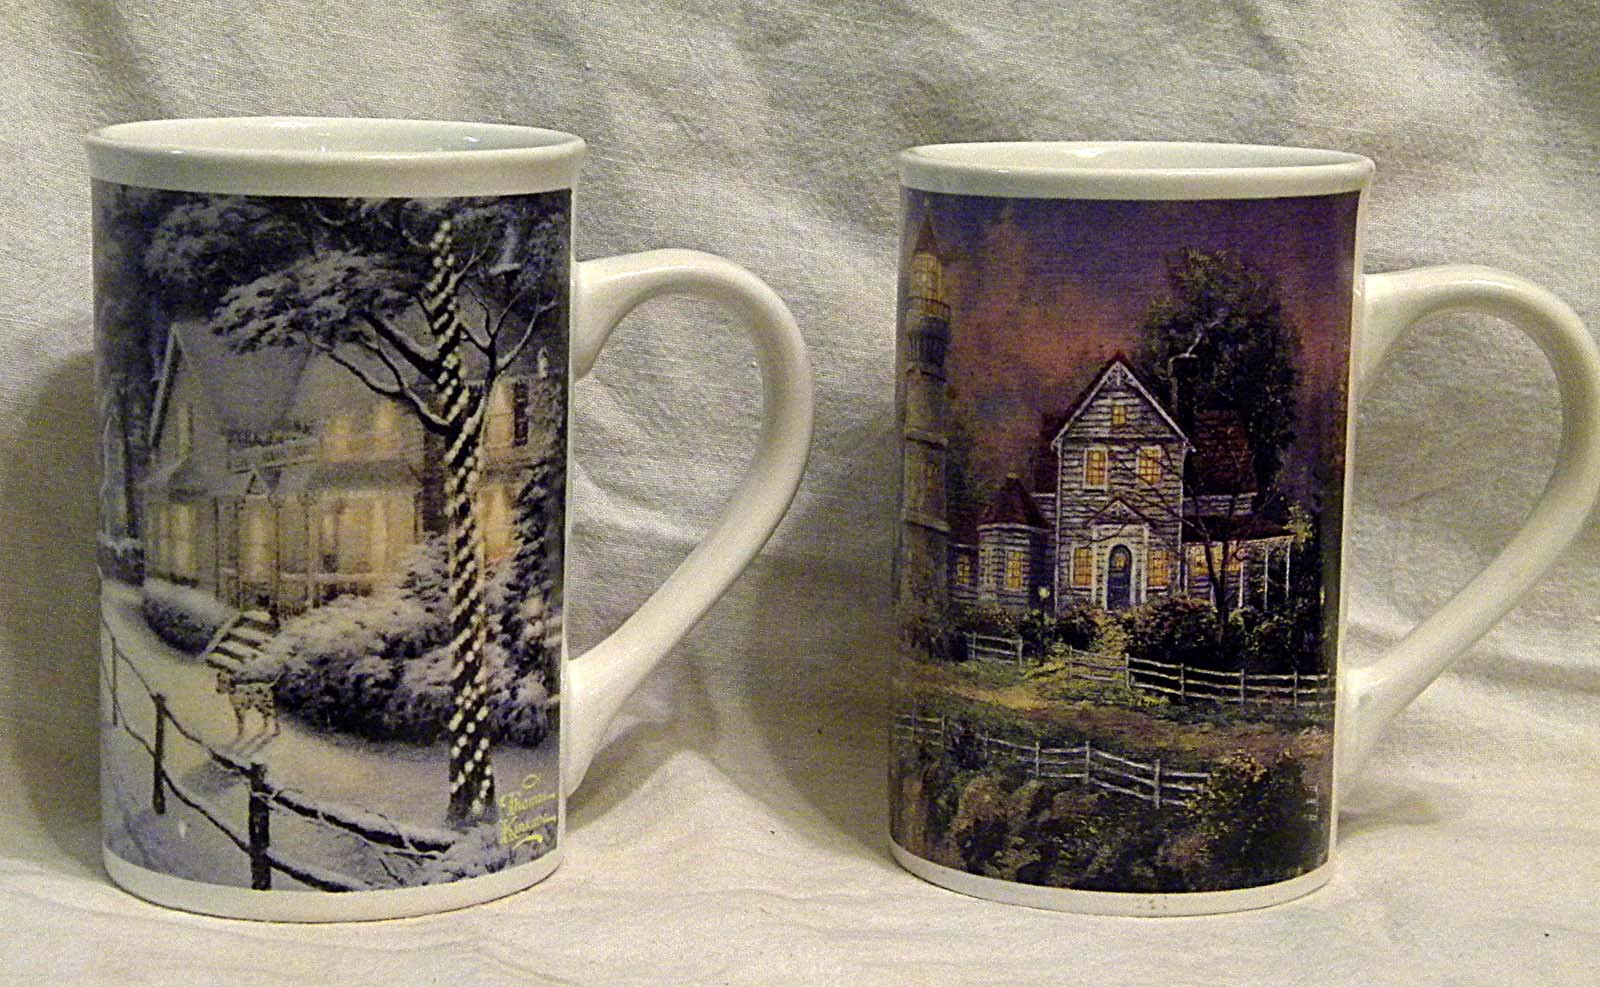 2 Thomas Kinkade Ceramic Mugs  Victorian Light   Hometown Christmas Memories   - $20.00